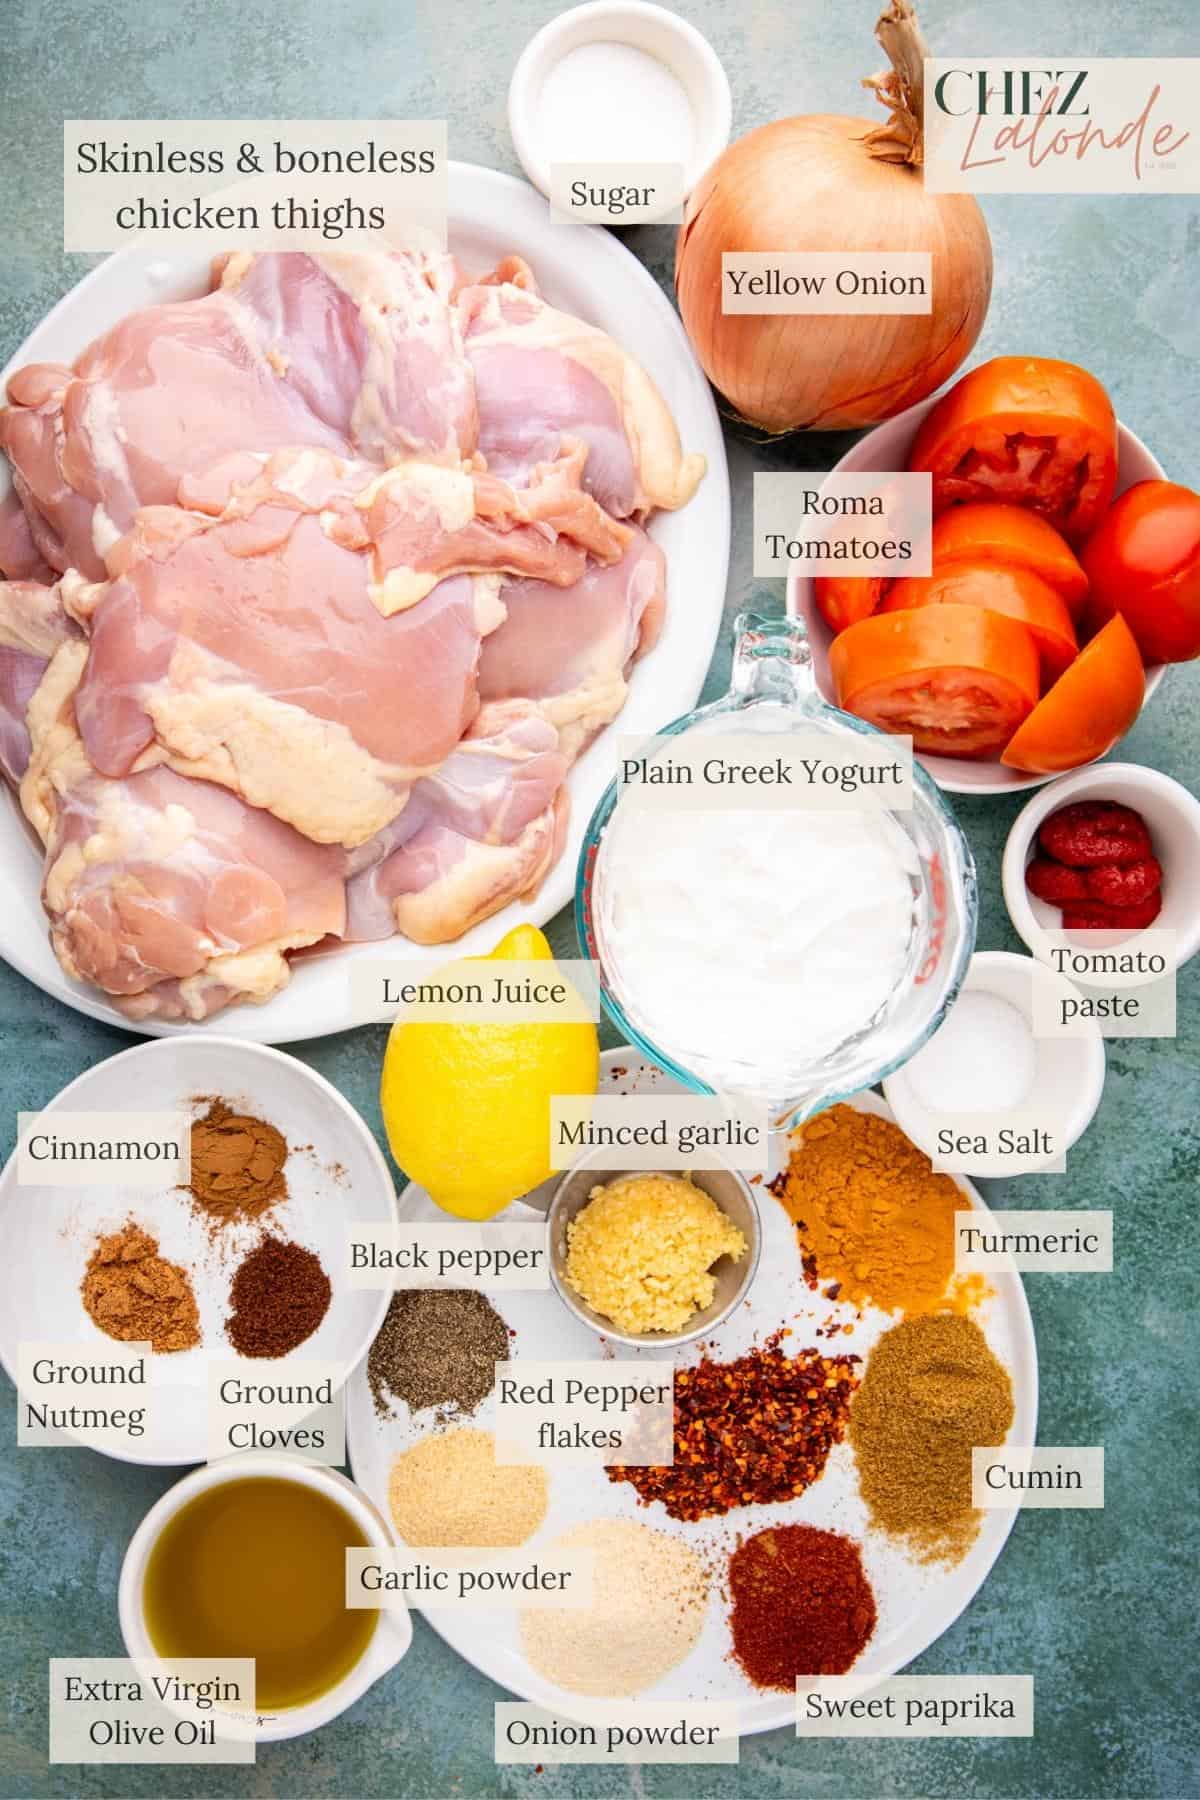 Ingredients to make air fryer chicken shawarma.